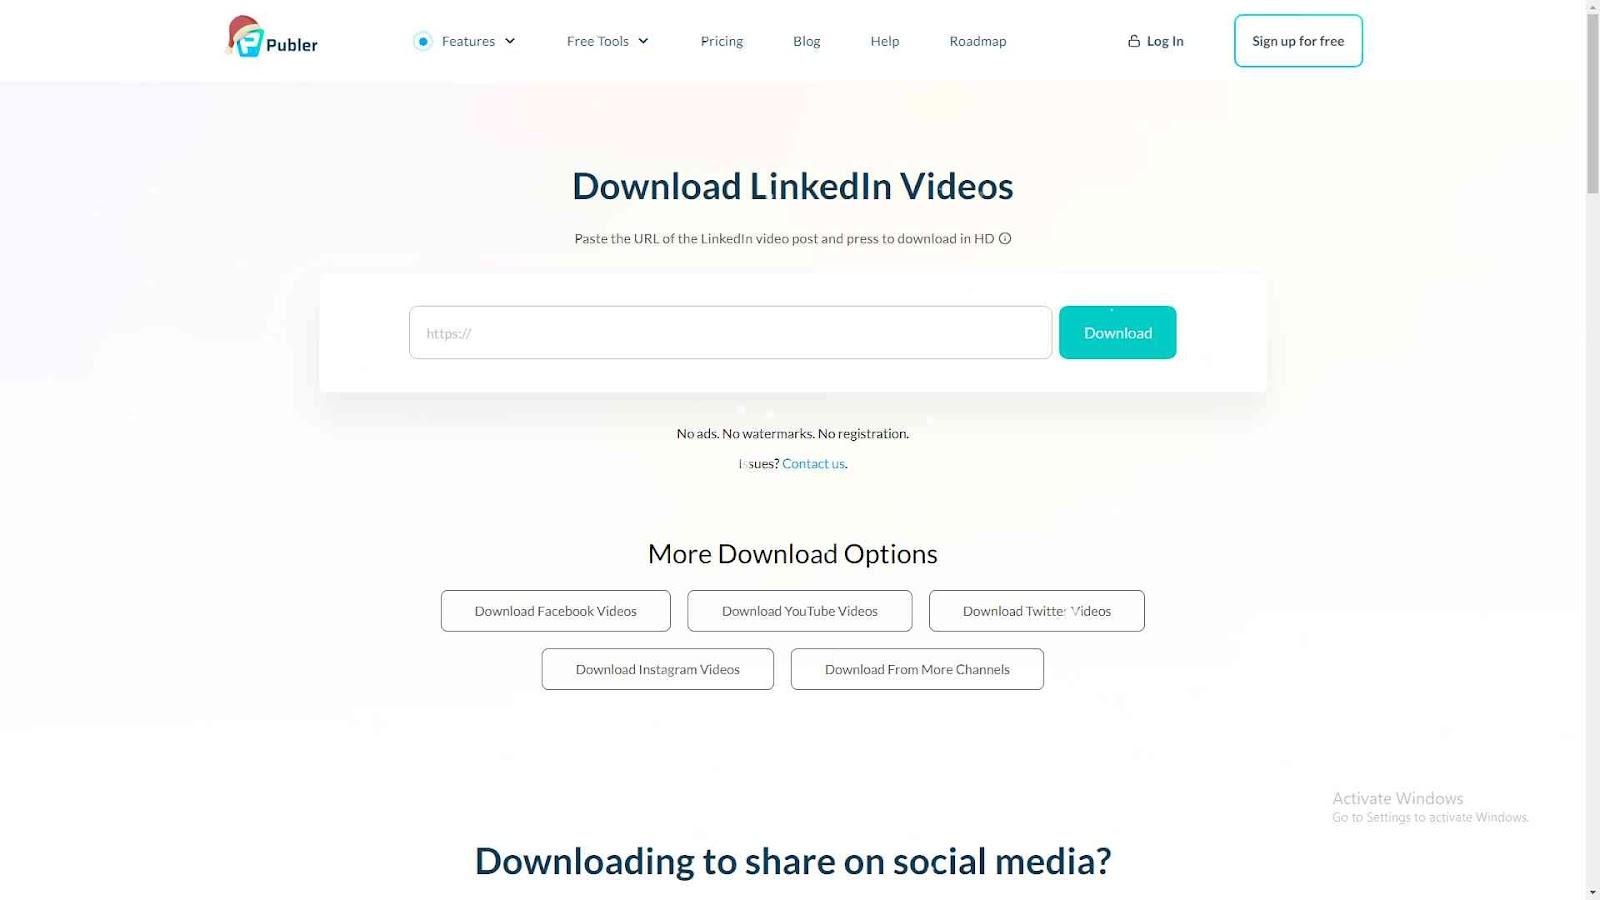 Publer's Download LinkedIn Video